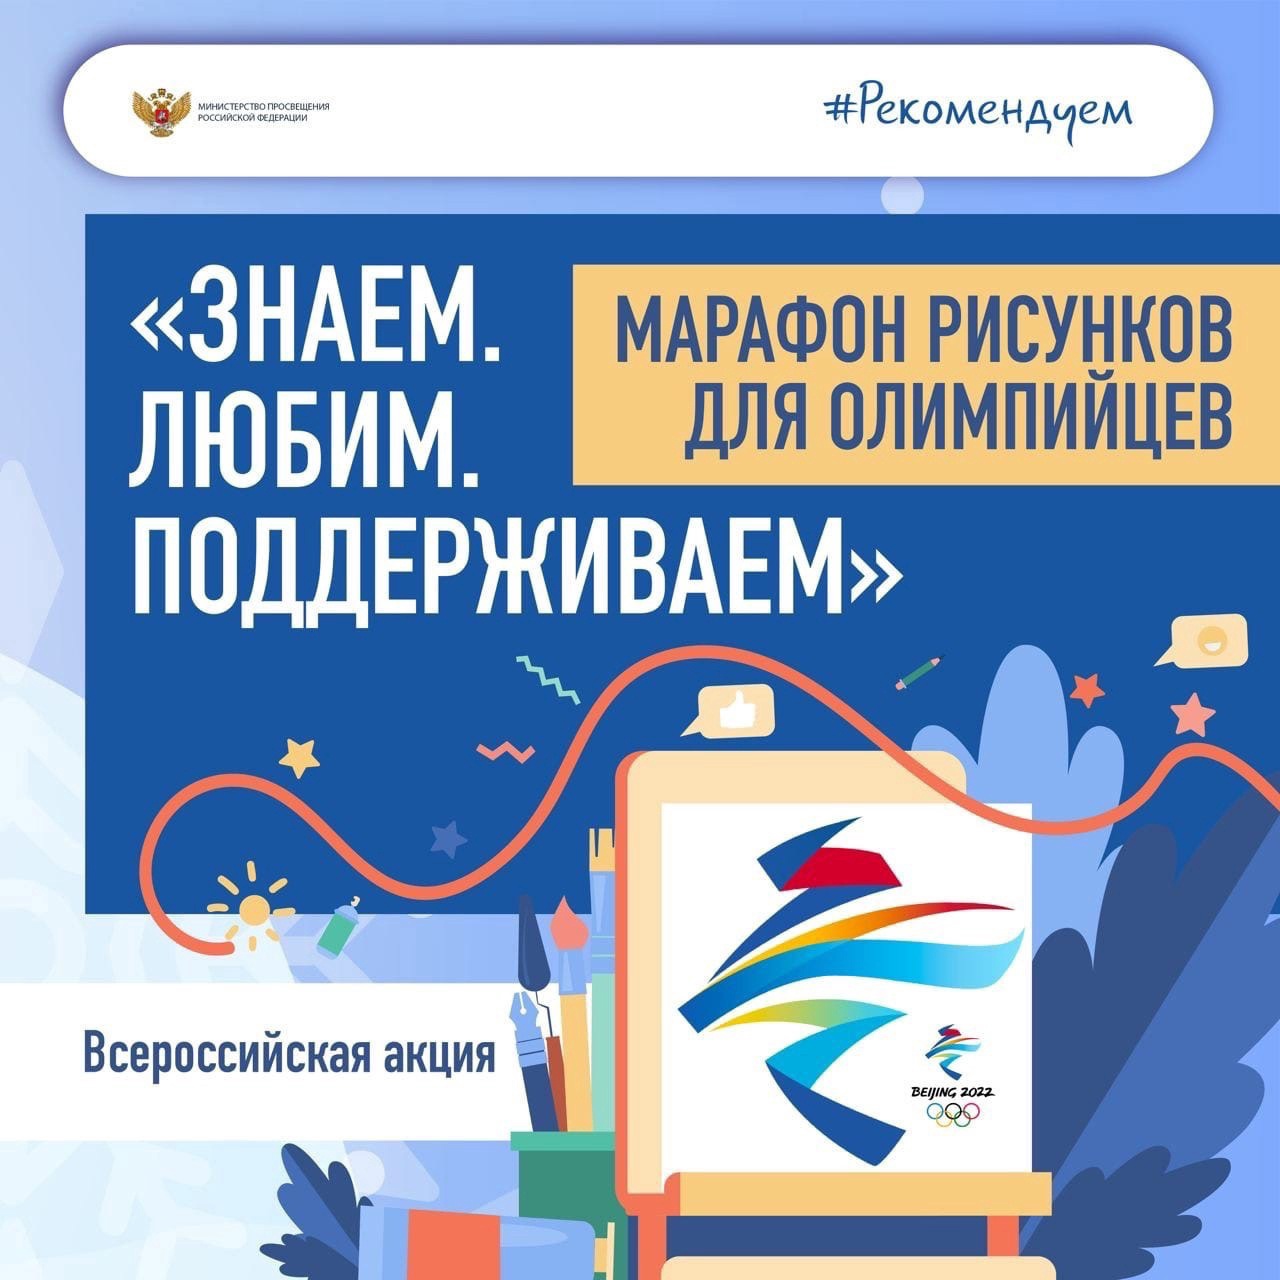 Рисунок в поддержку российских спортсменов на Олимпиаде